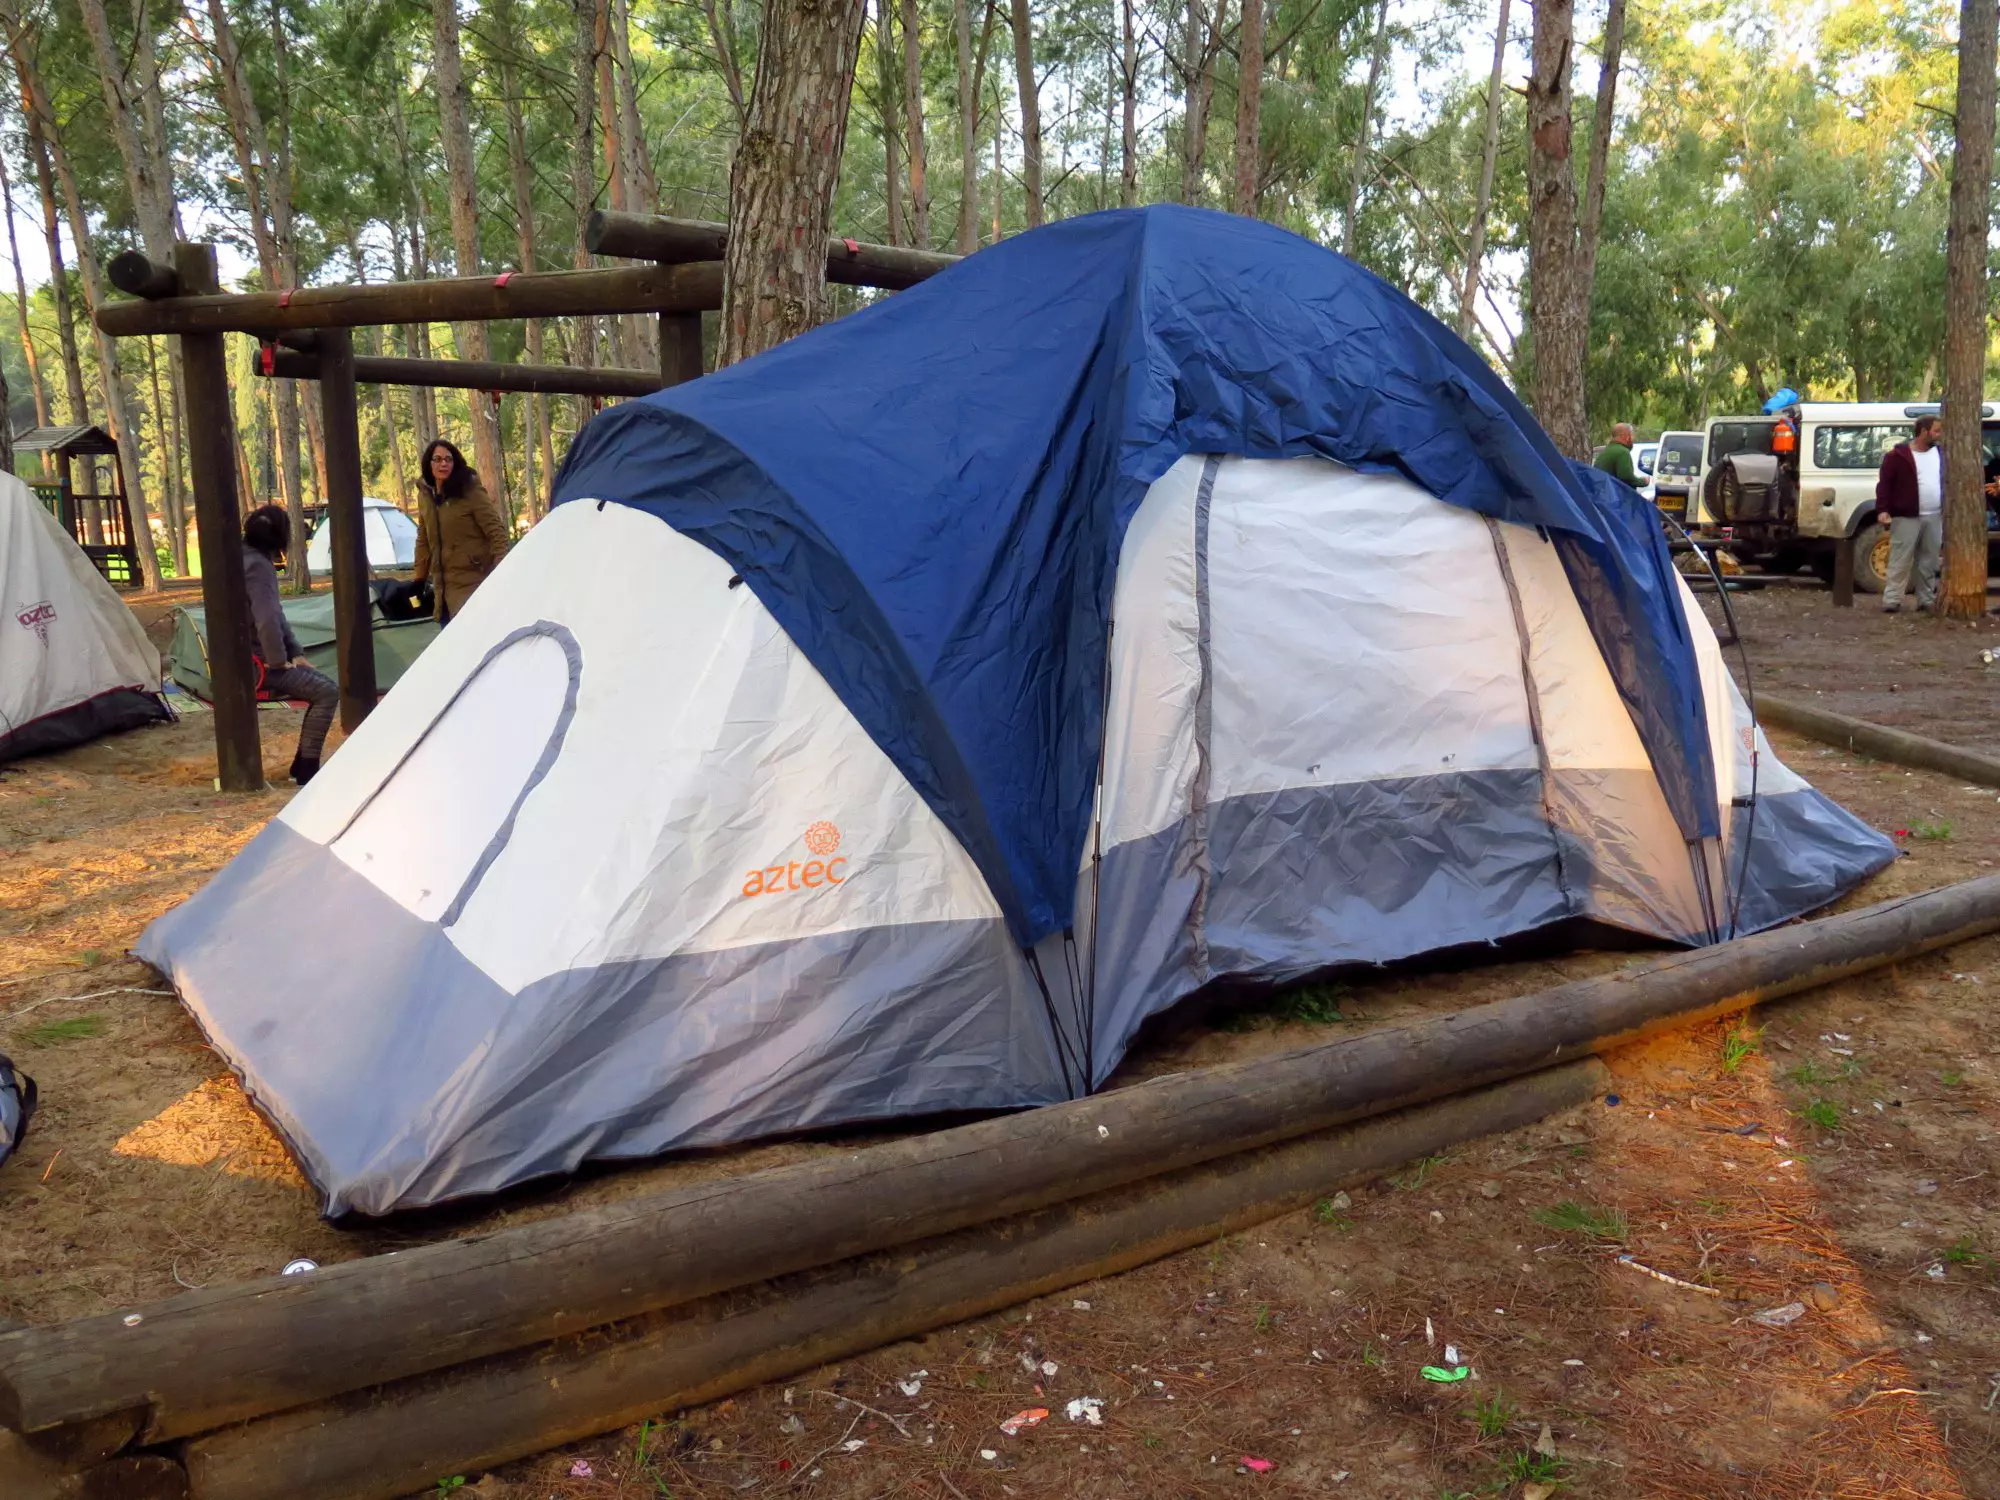 אוהל משפחתי המחייב תשלום ארנונה ומשכנתא, 4,000 שקלים והוא שלכם